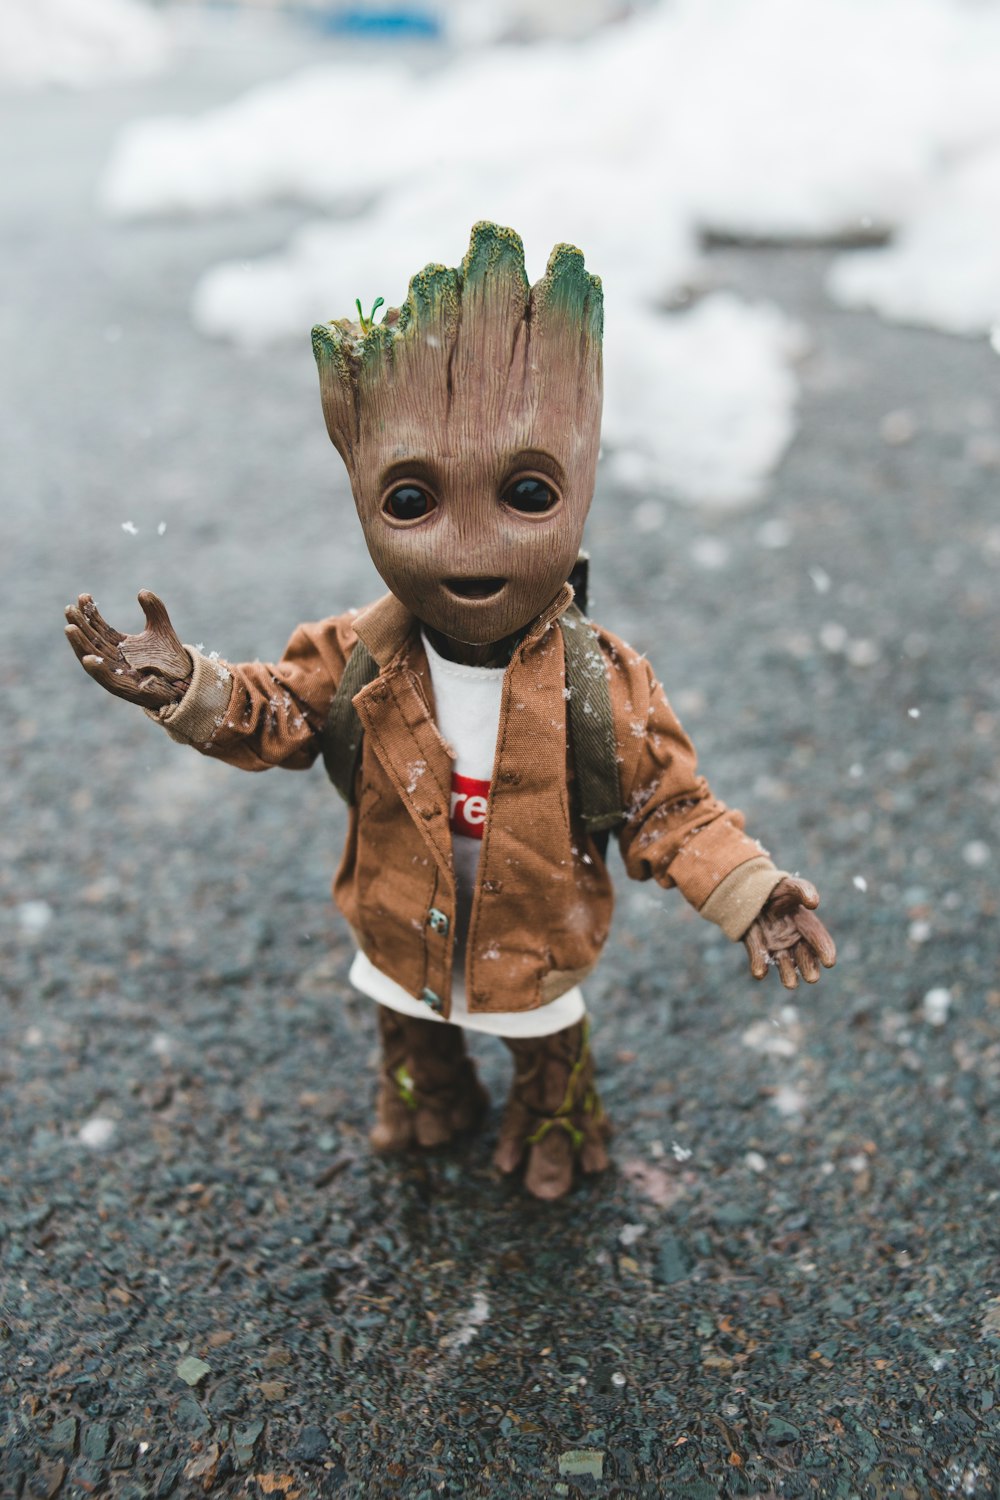 Imágenes de Groot | Descargar imágenes gratis en Unsplash